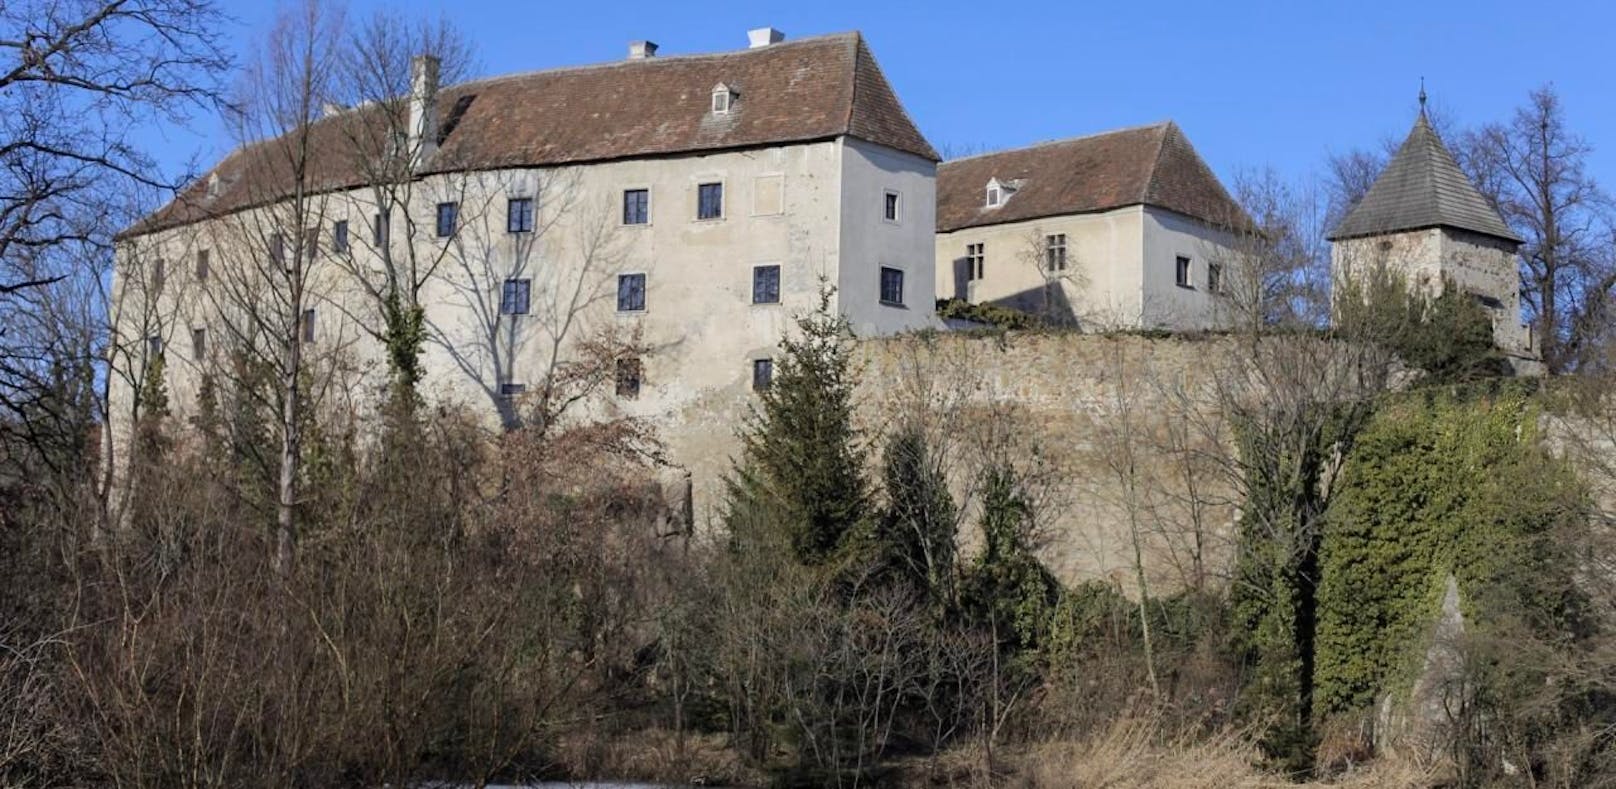 Kunst im Wert von 100.000 Euro aus Schloss gestohlen